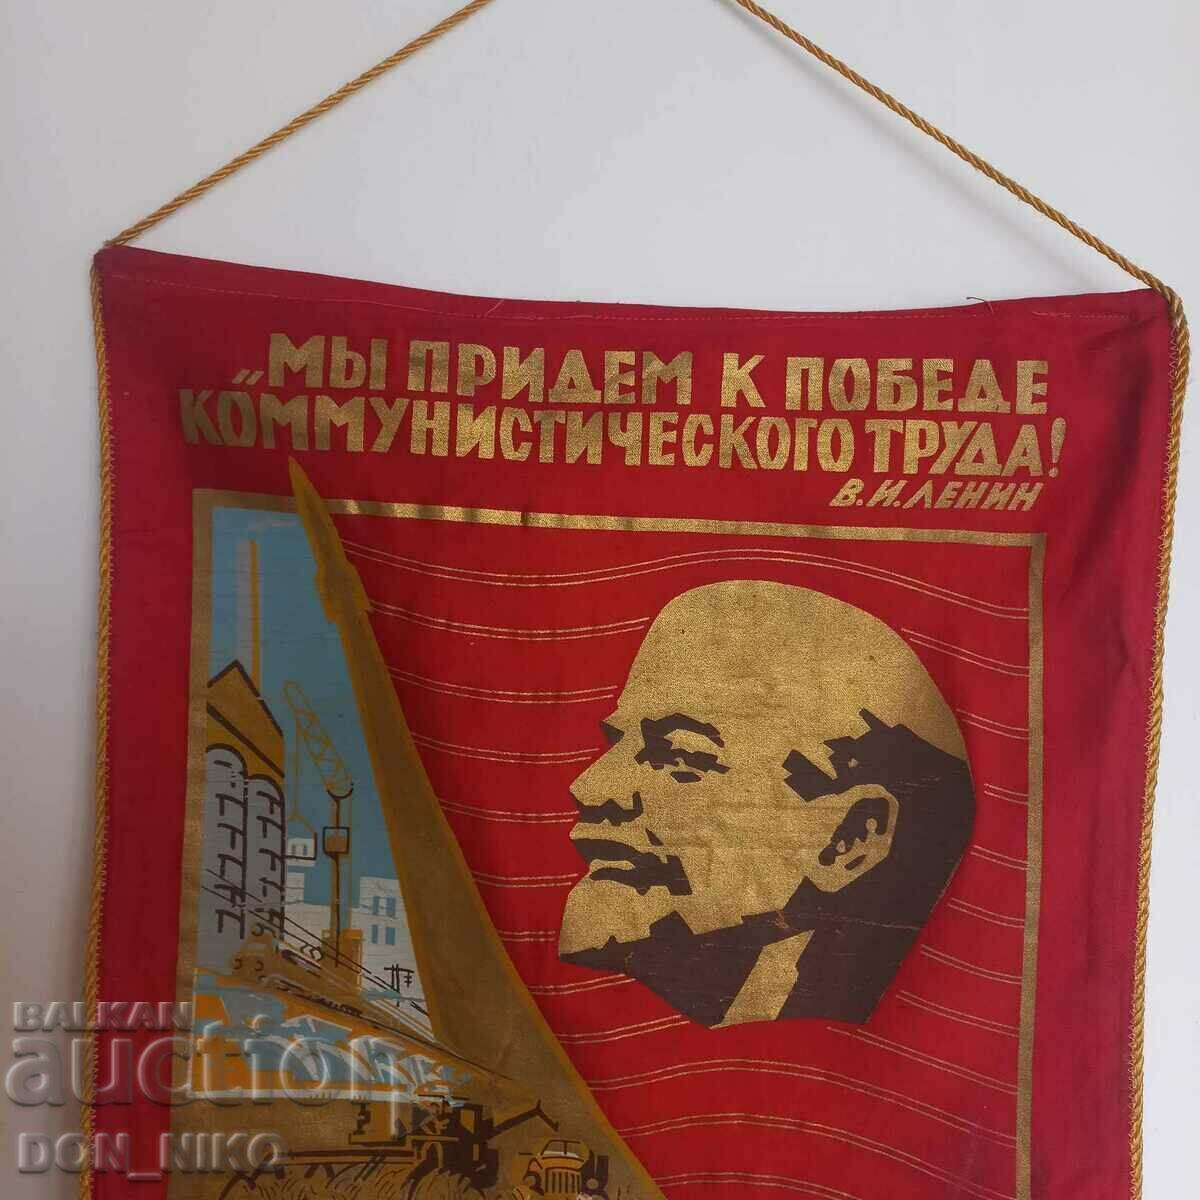 Πανό, Σημαία, Λένιν